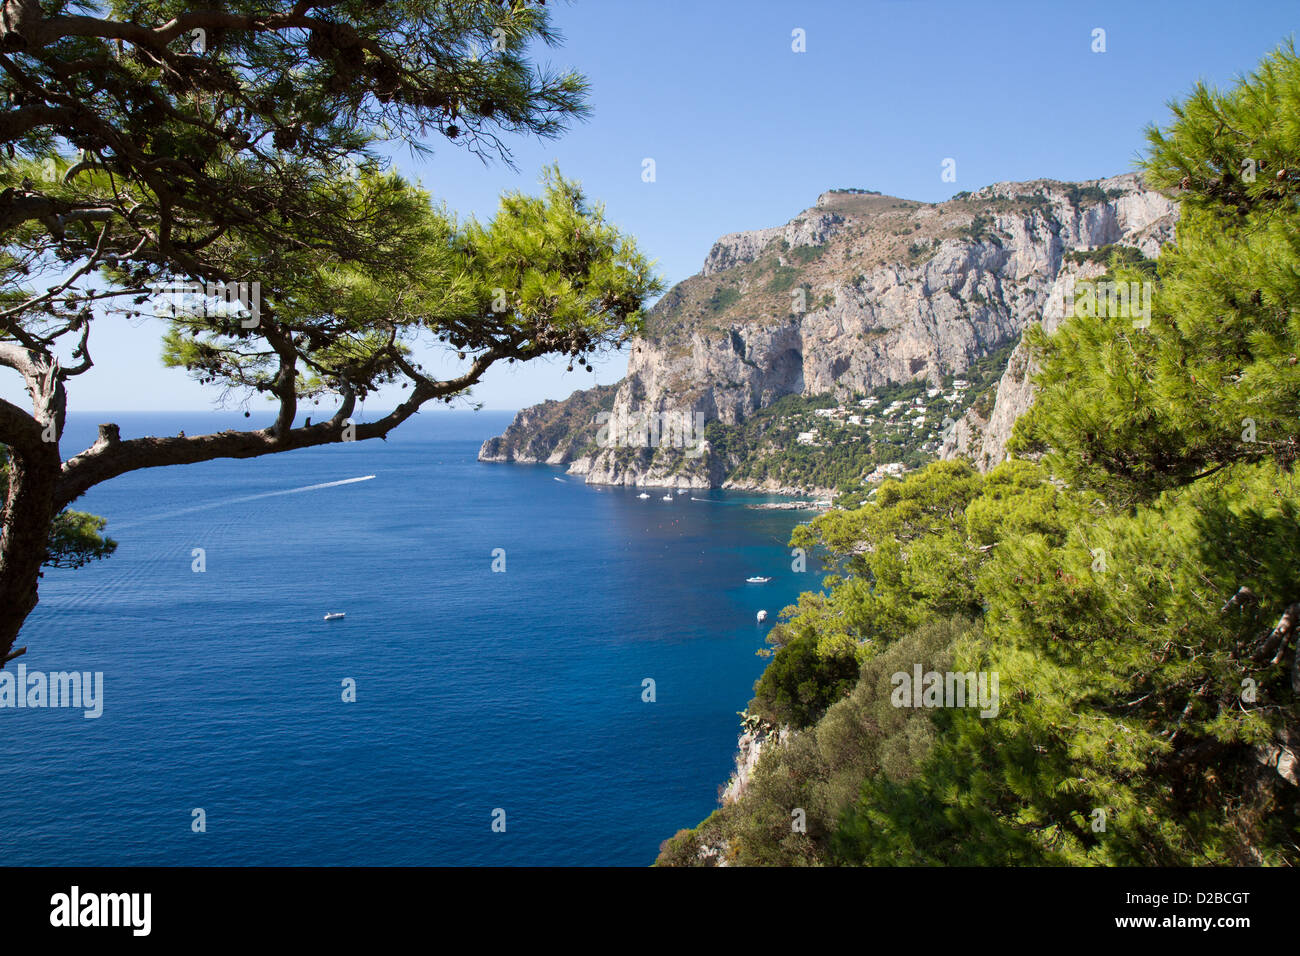 View of Marina Piccola on the South coast of Capri, Campania, Italy Stock Photo